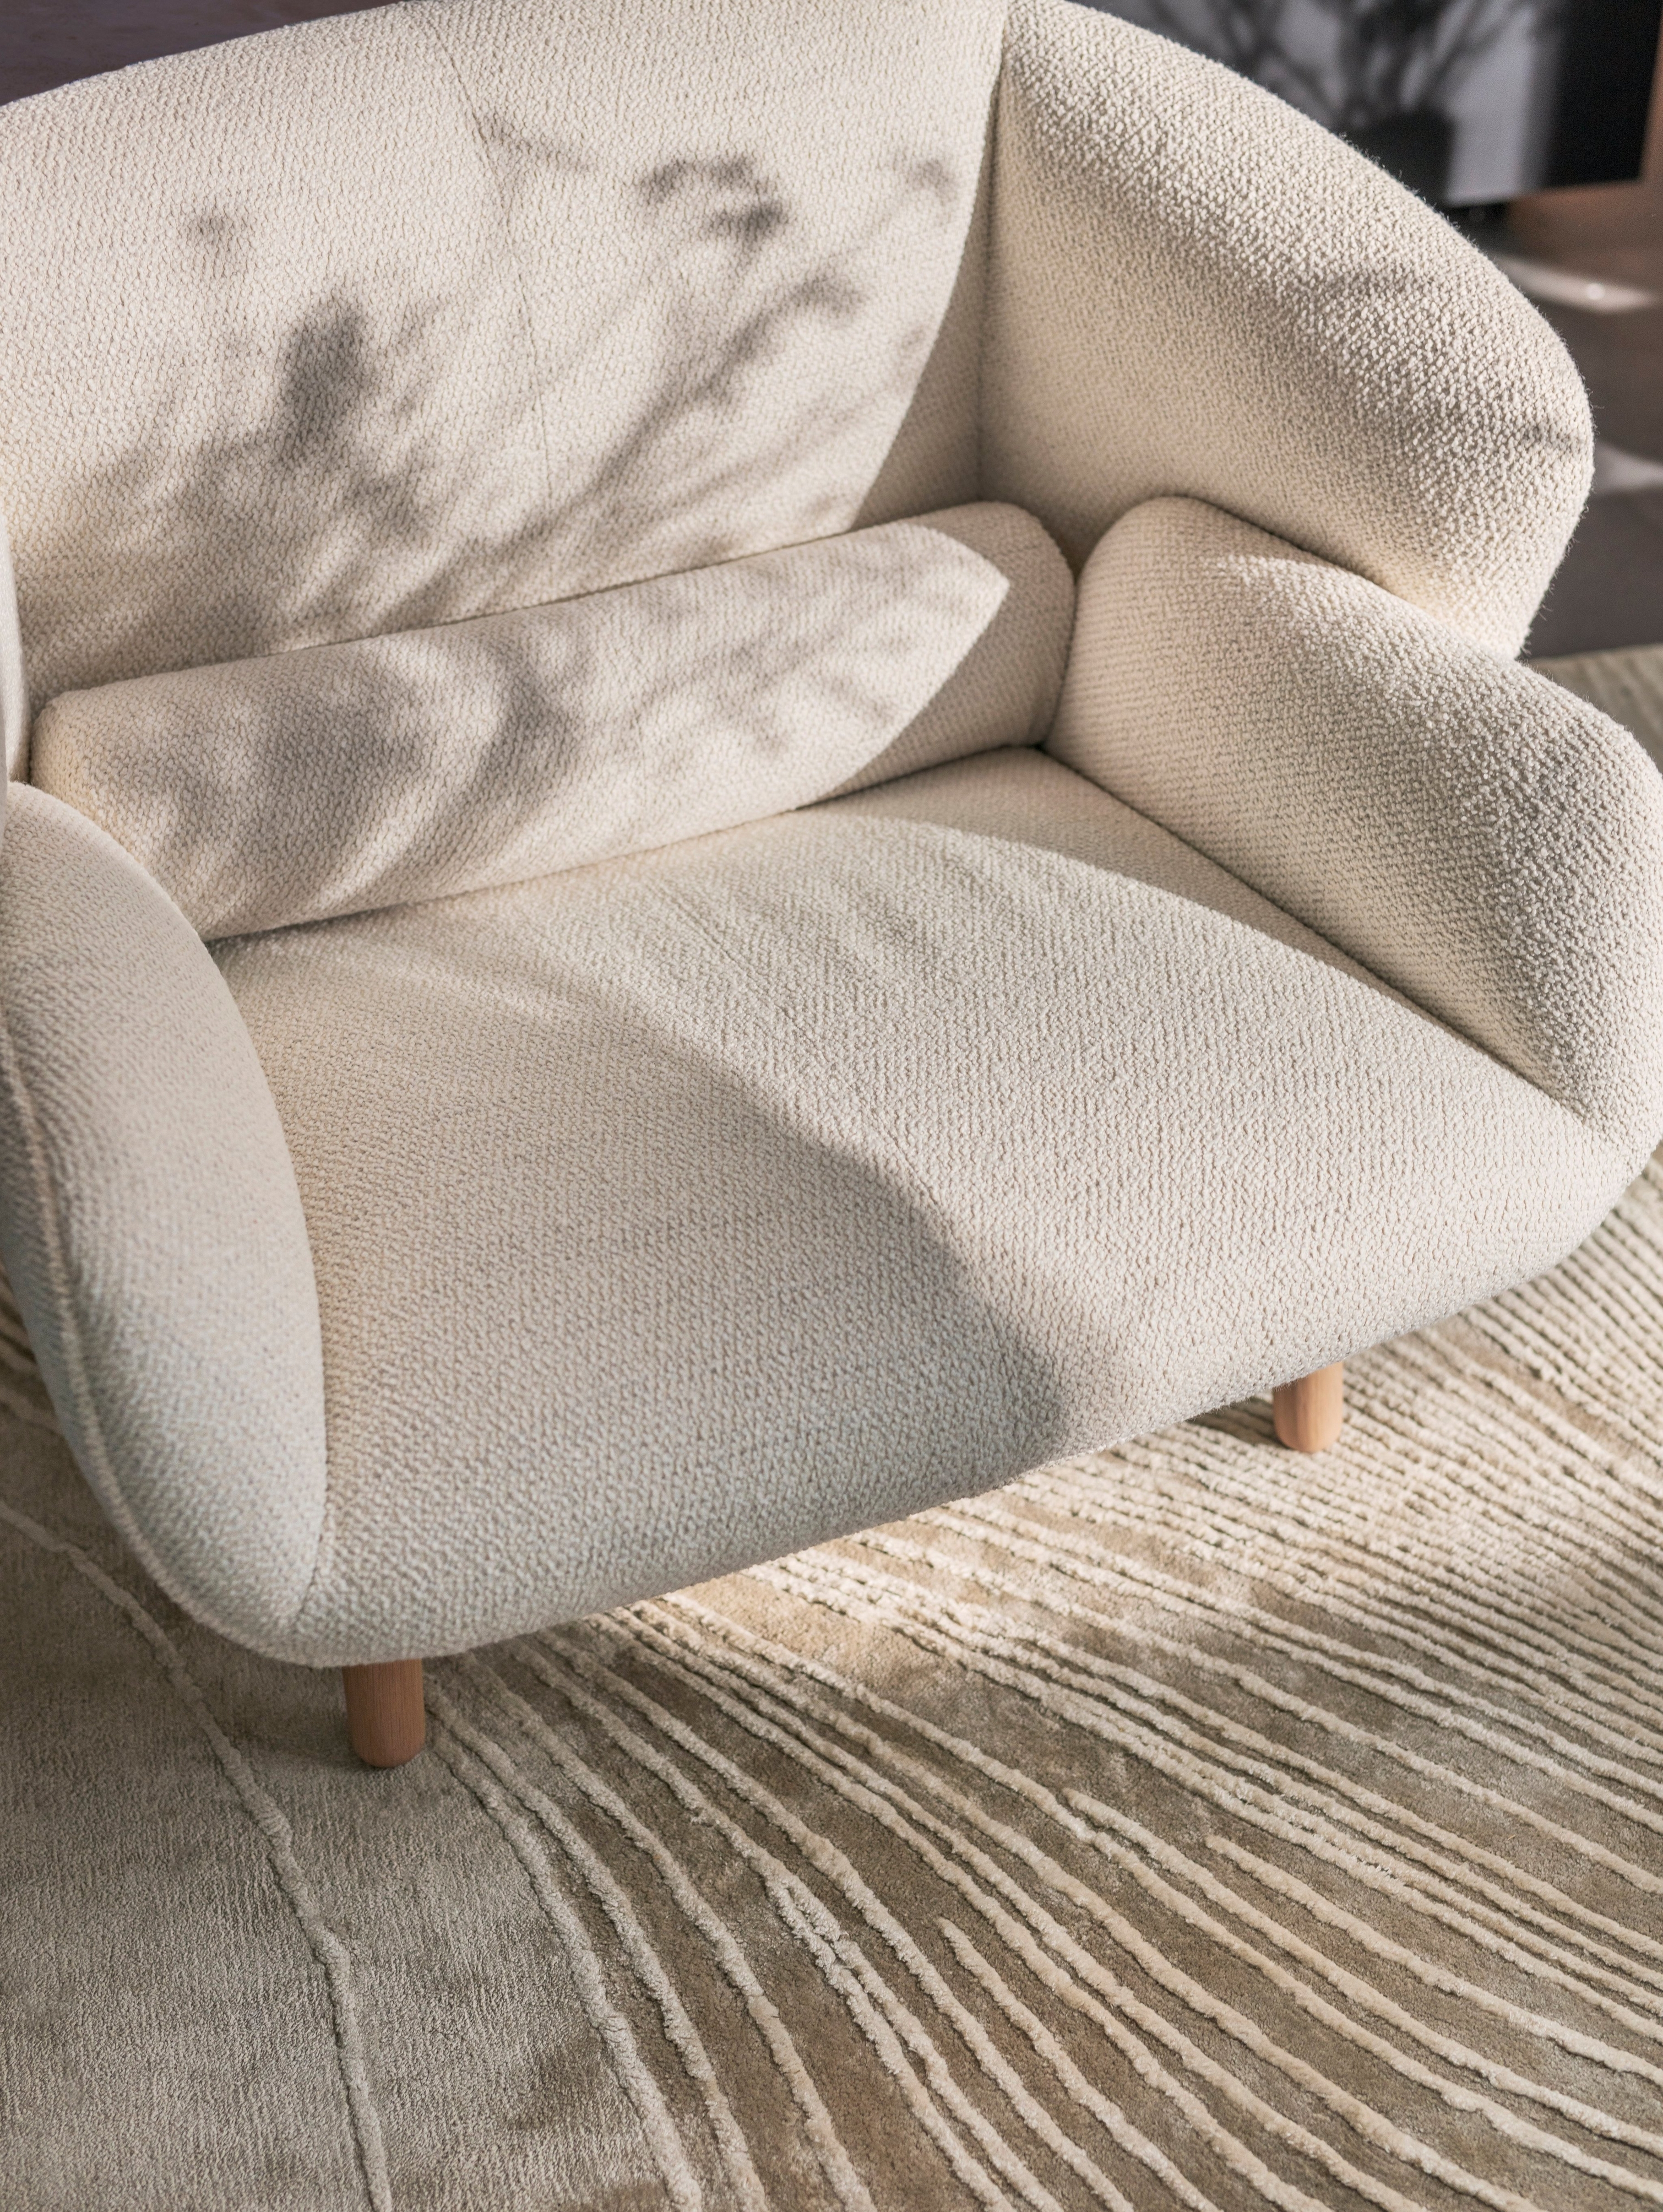 Кресло Fusion с обивкой из ткани Lazio белого цвета в сочетании с ковром Tide серо-белого цвета.